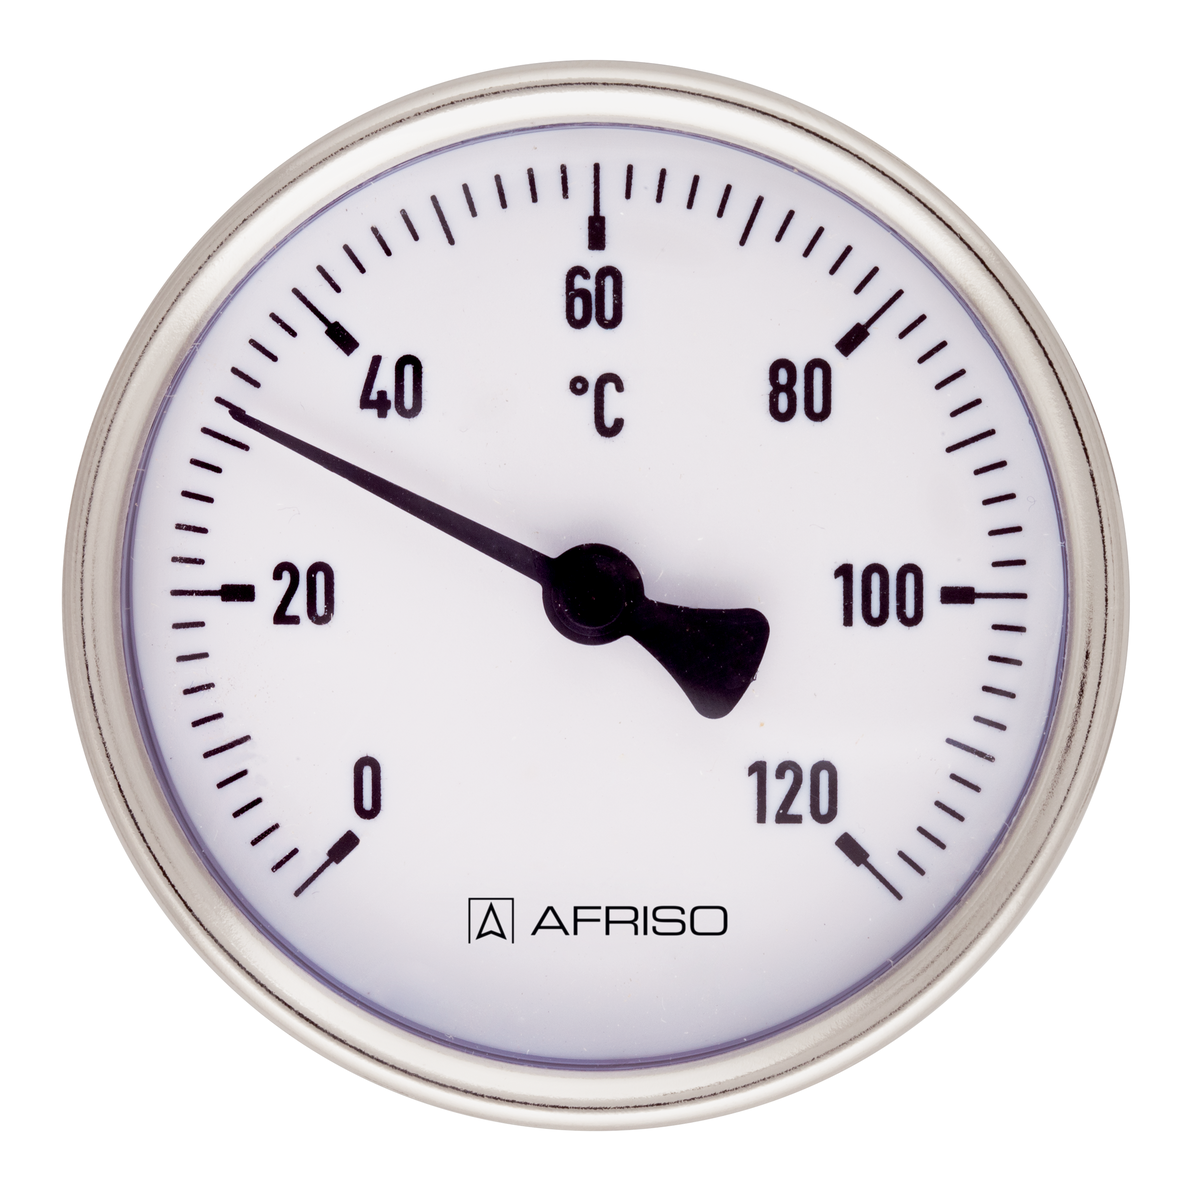 Bimetalový teploměr BiTh 50 ST, Ø 50 mm, 0 ÷ 60 °C, délka jímky 100 mm, G½", axiální - AFRISO.CZ